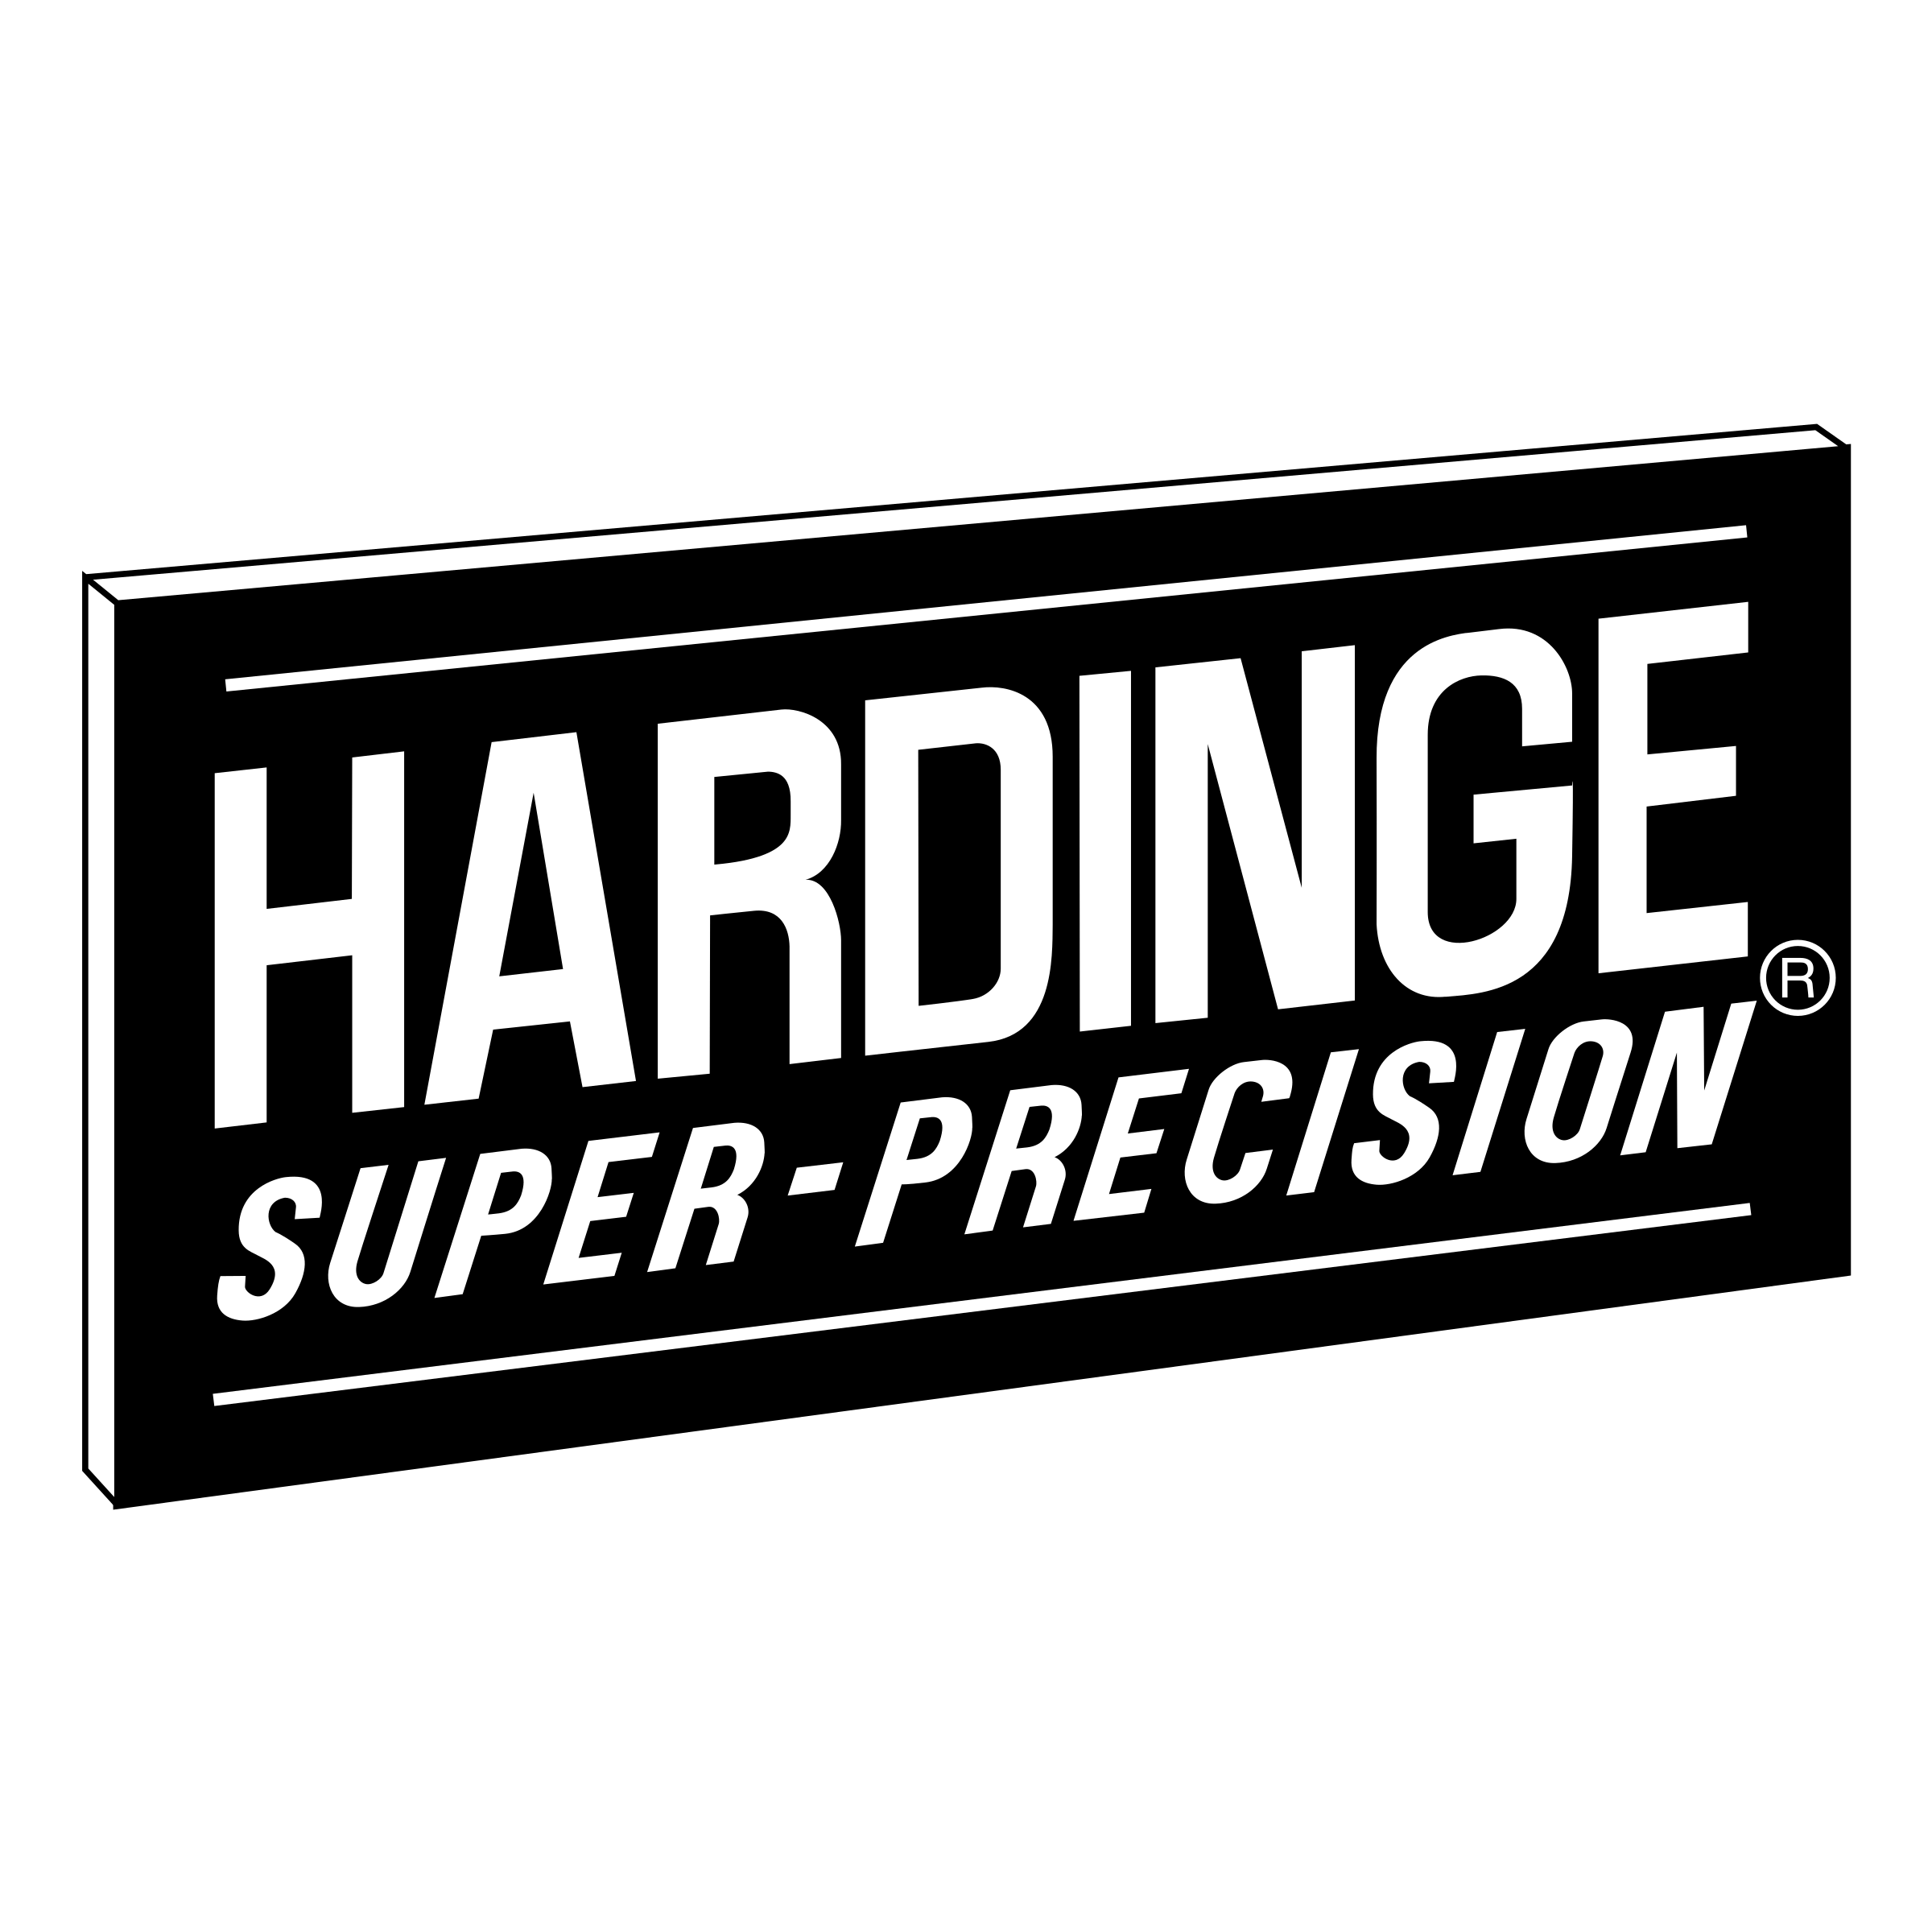 Hardinge Logo - Hardinge Super Precision Logo PNG Transparent & SVG Vector